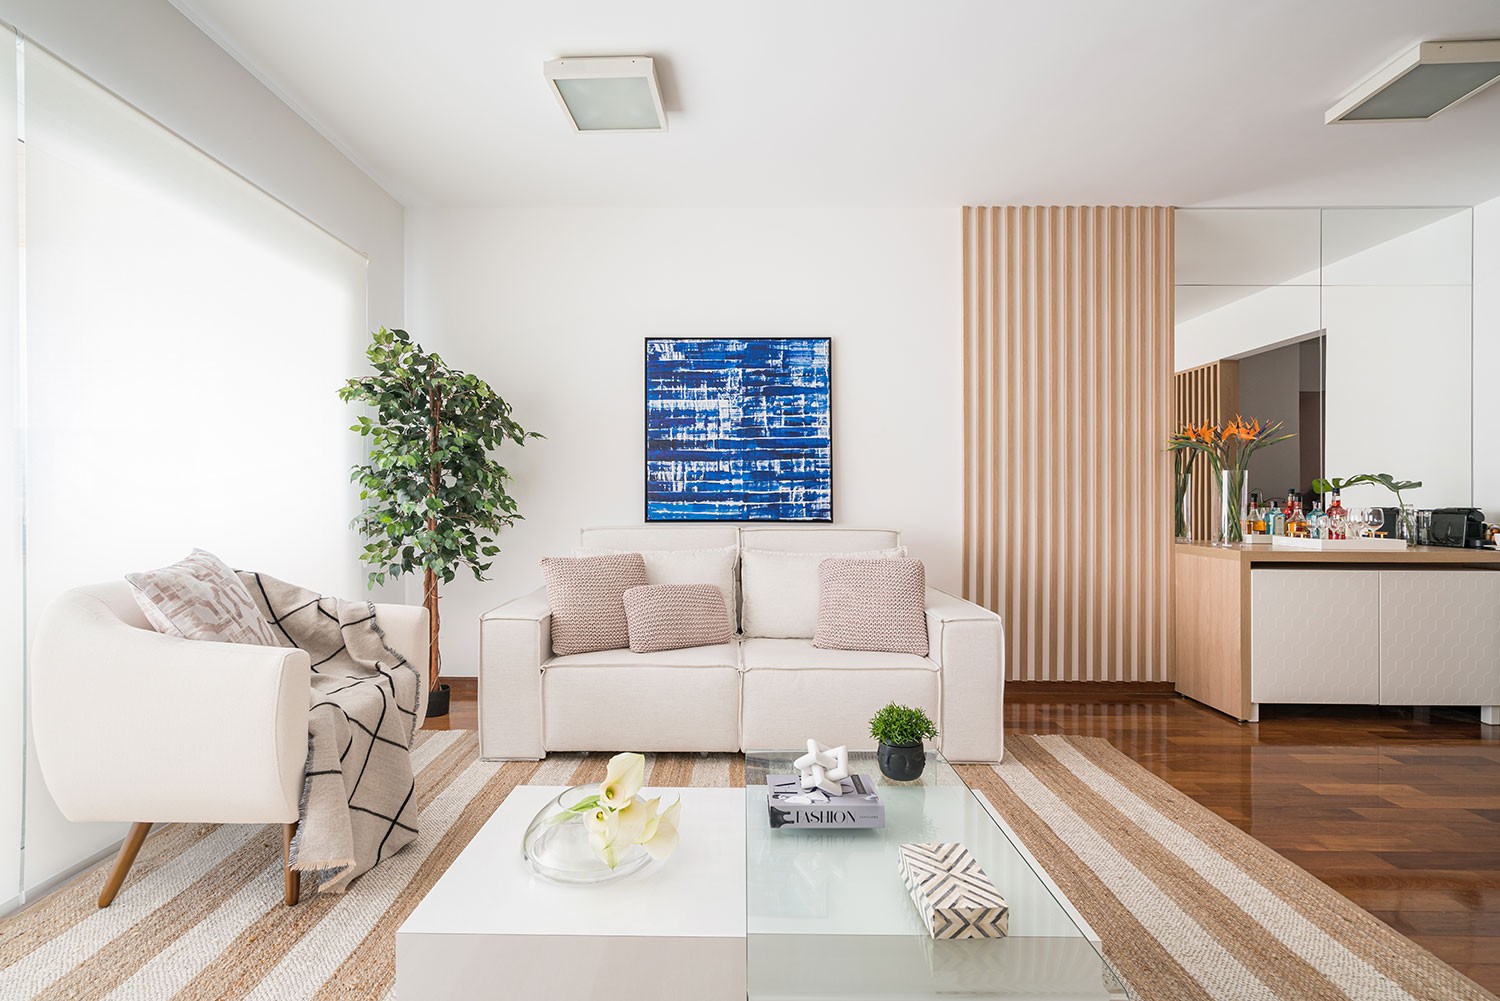 Décor do dia: sala de estar com estilo neutro e paleta de cores sóbrias (Foto: Kadu Lopes)